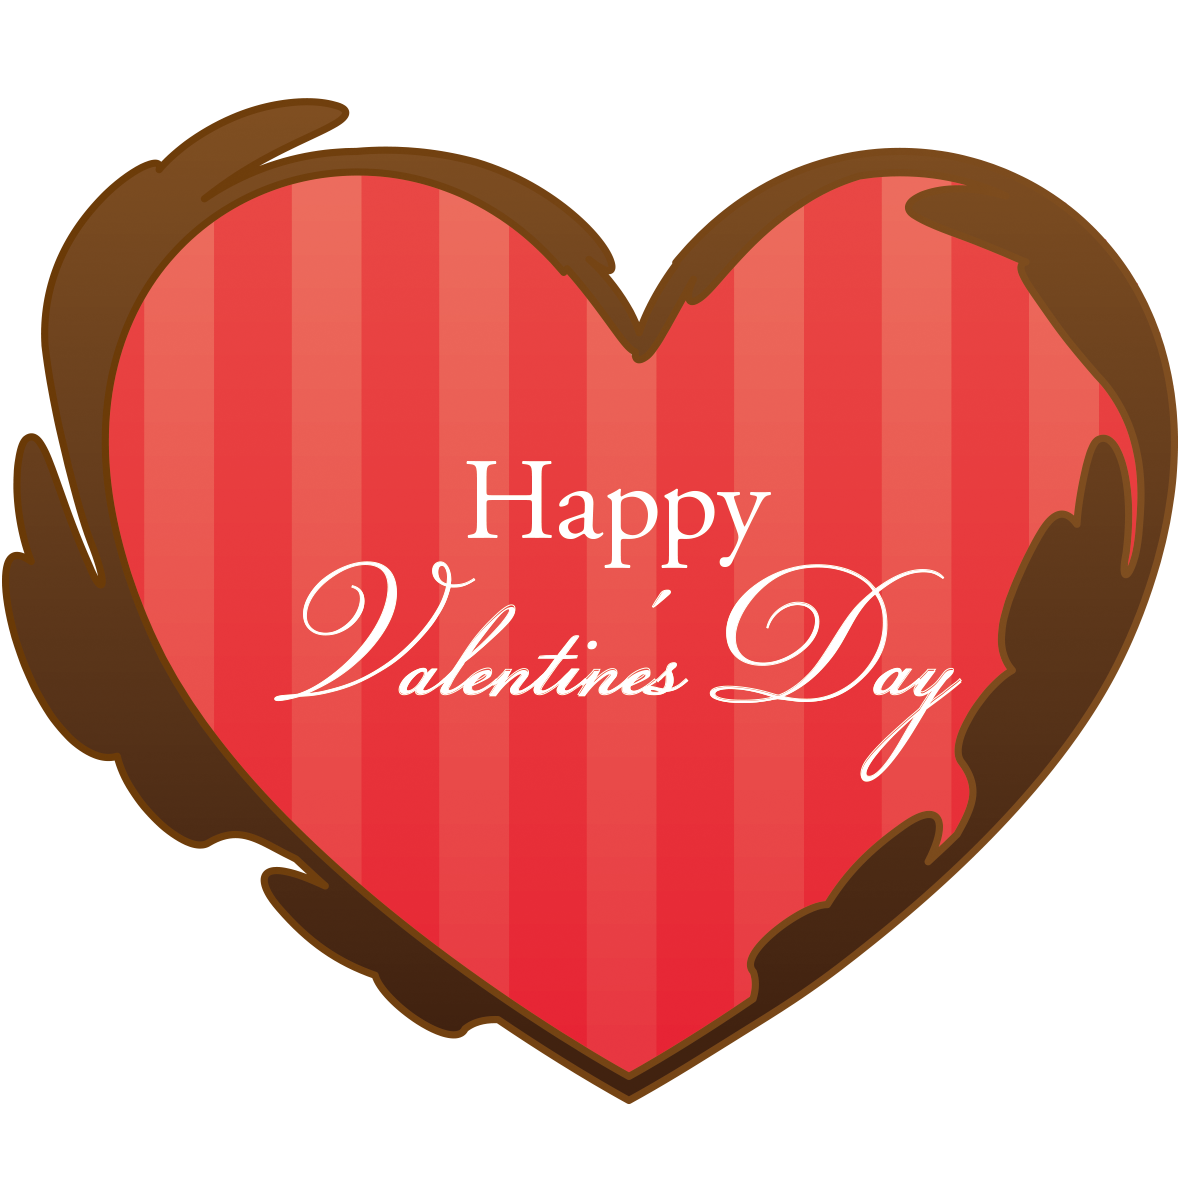 豪華な雰囲気のバレンタインのイラスト素材です。チョコレート色の飾りや赤いハートのストライプ柄も可愛いポイントです。